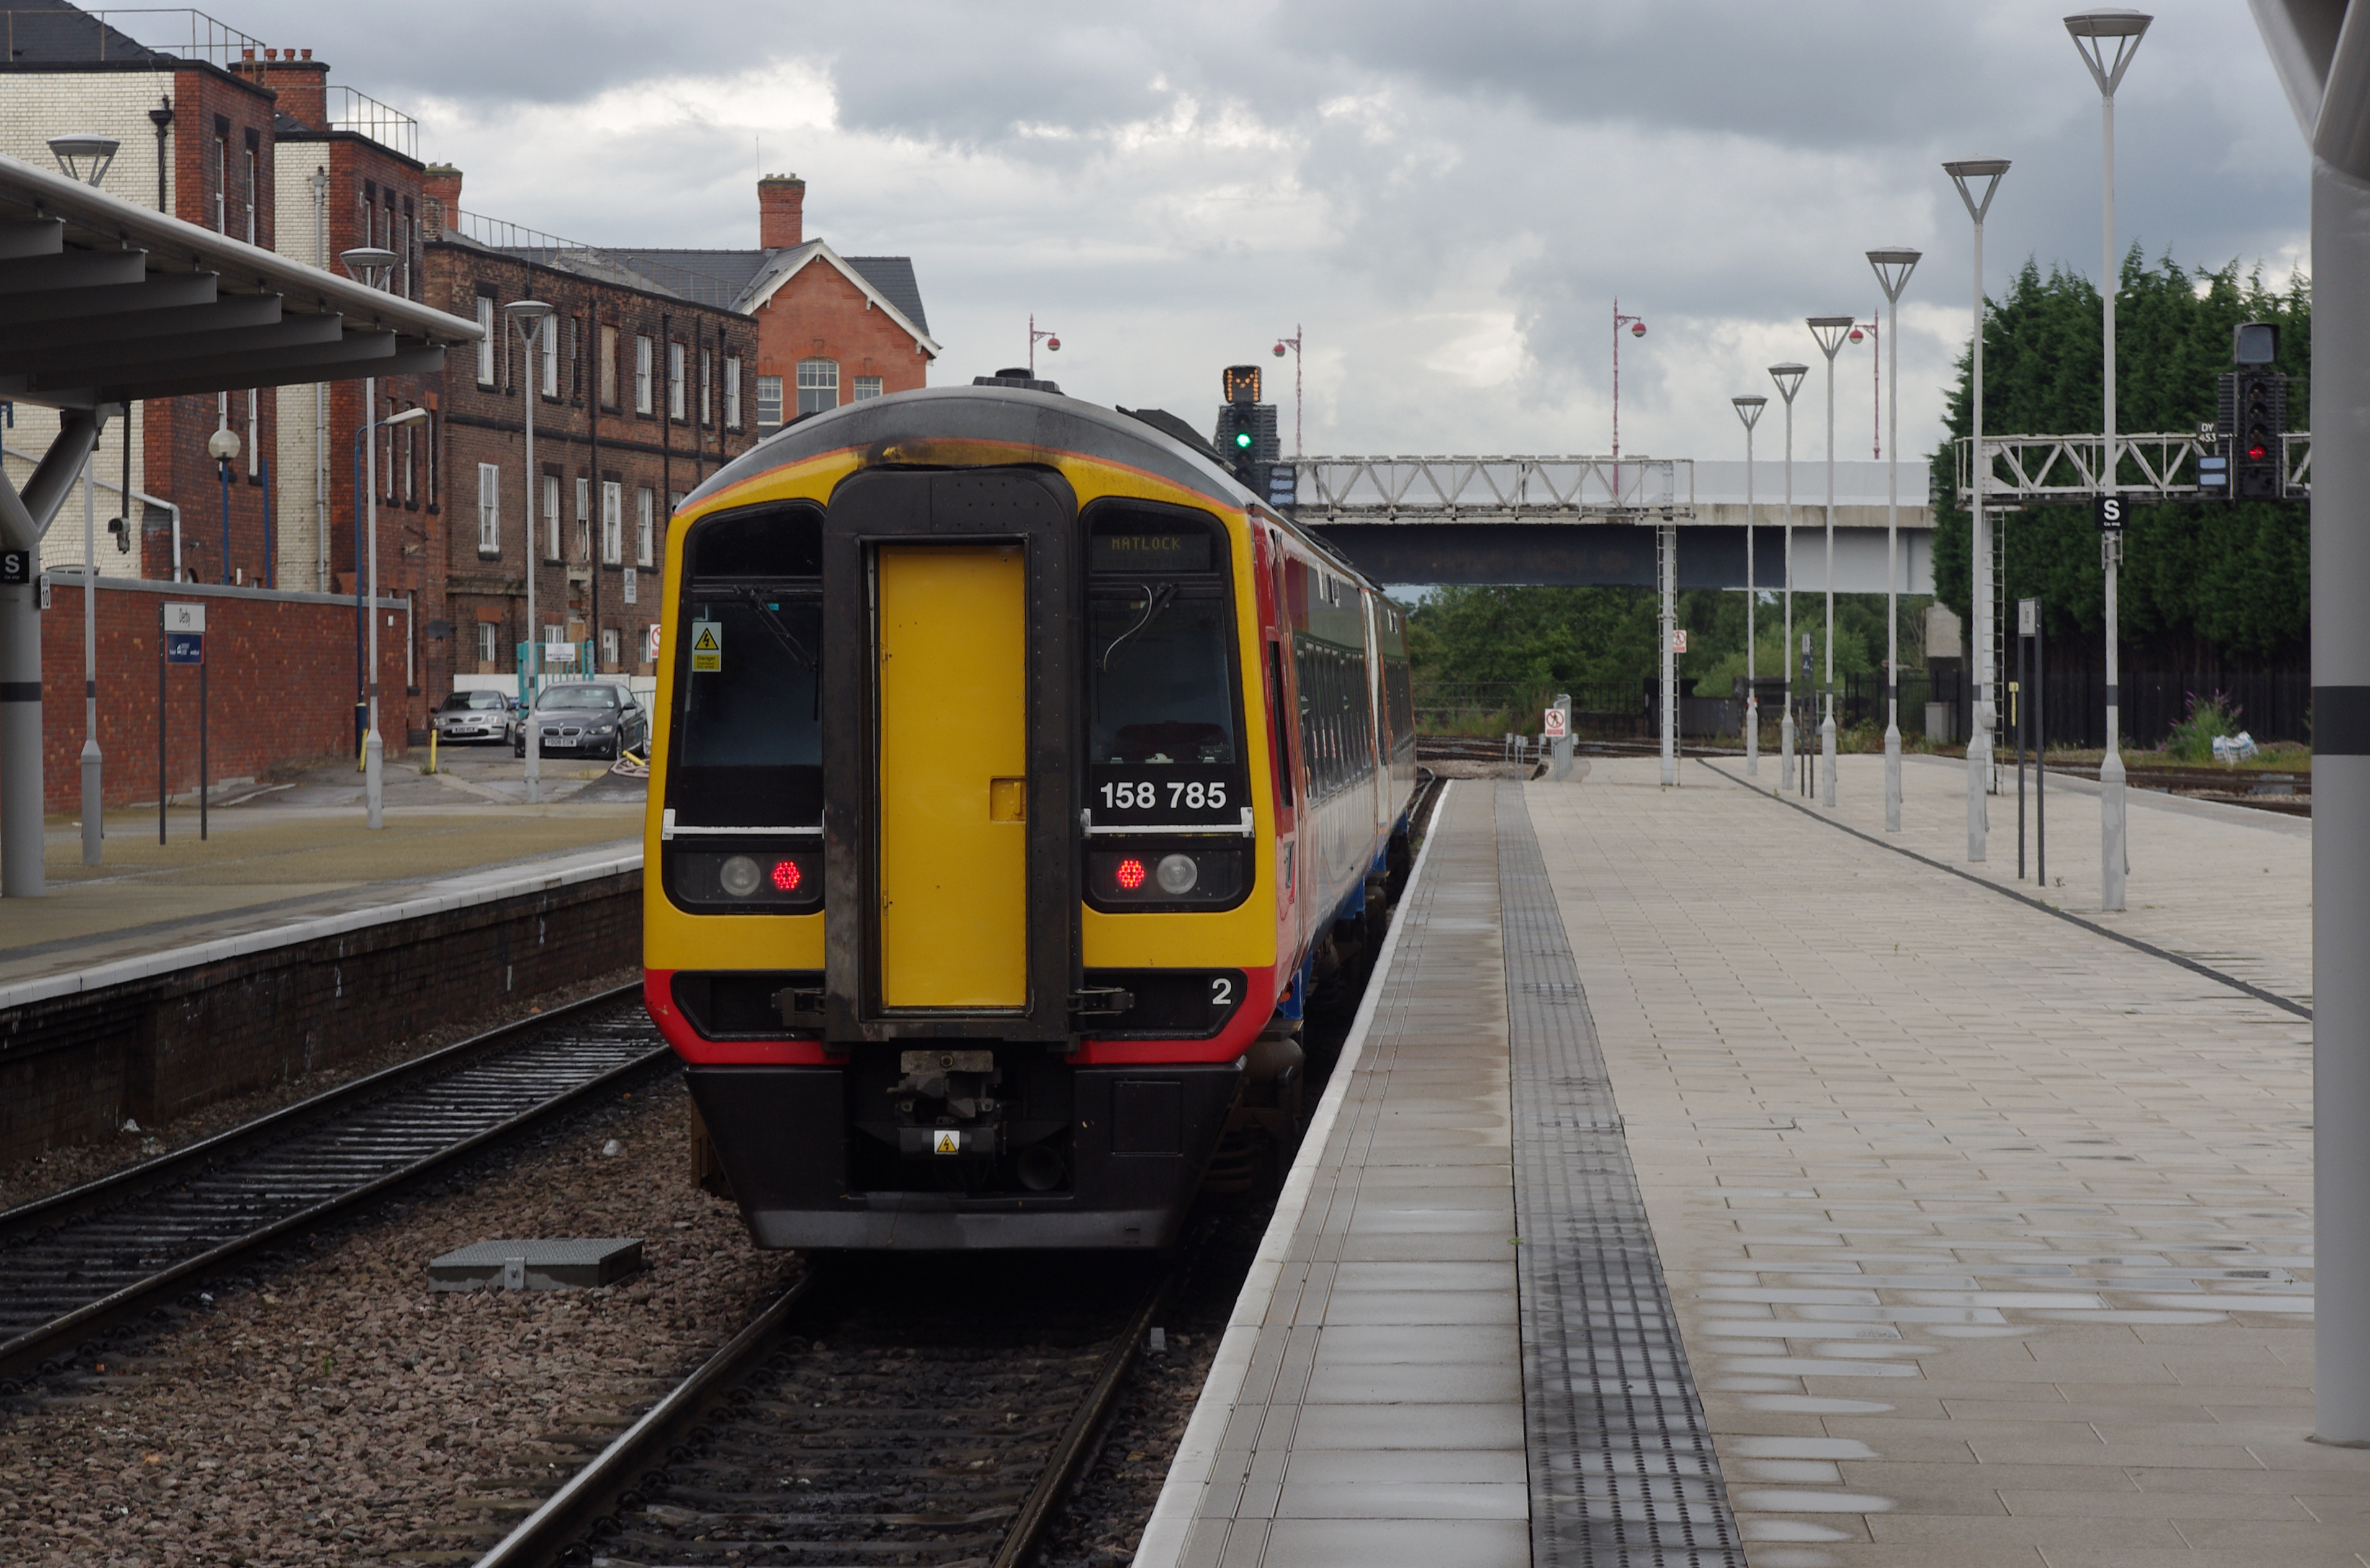 Derby railway station MMB 01 158785